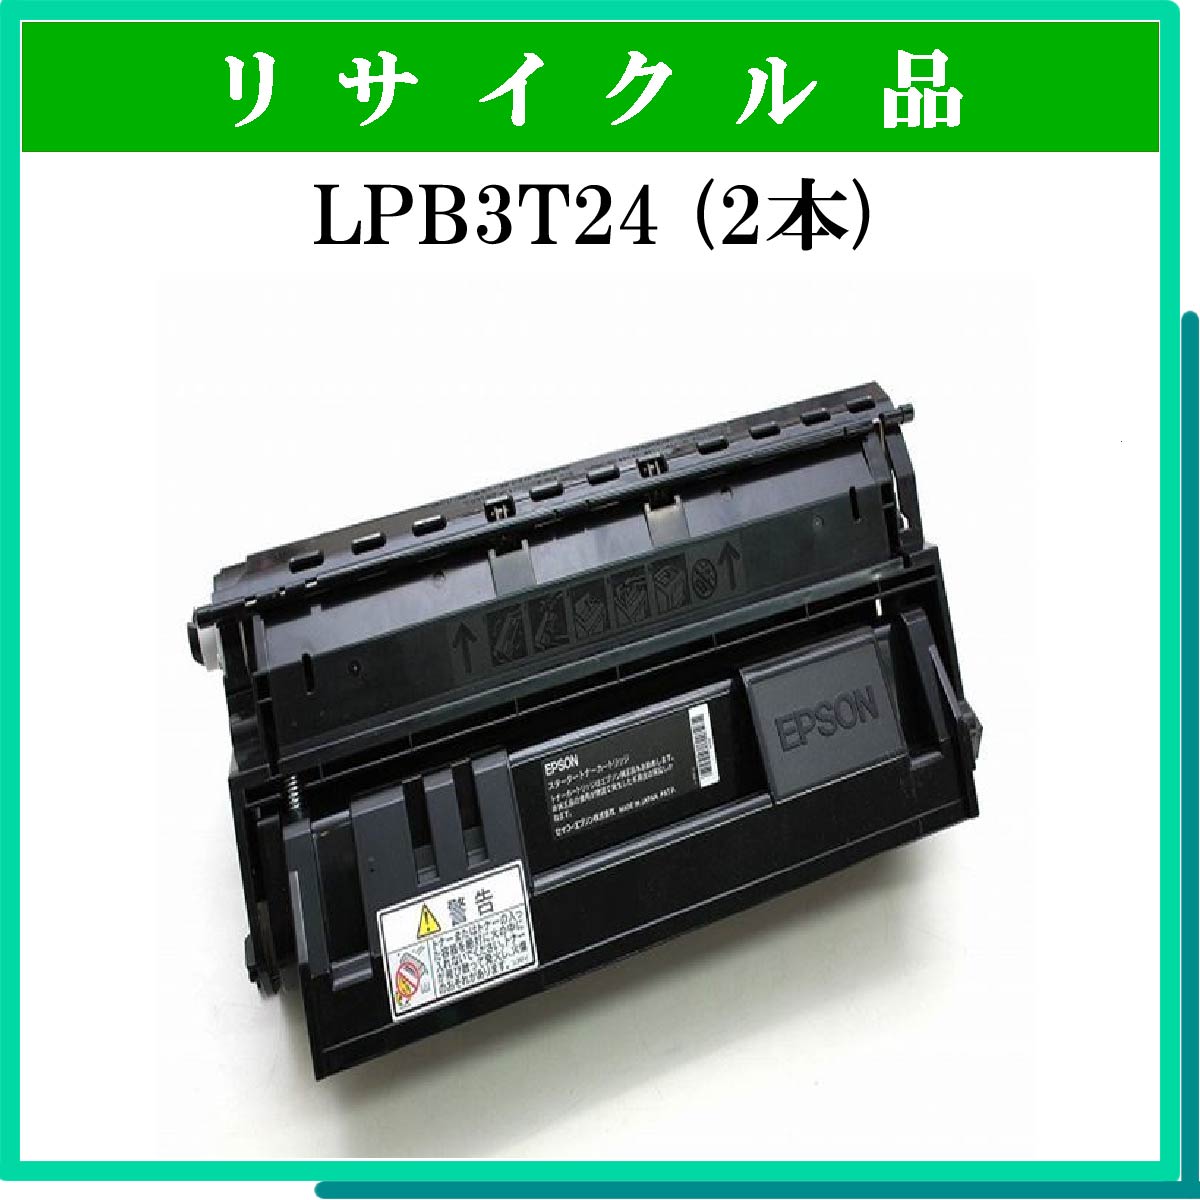 EPSON 純正トナーカートリッジ LPB3T24 Sサイズ(6,000ページ) - インク